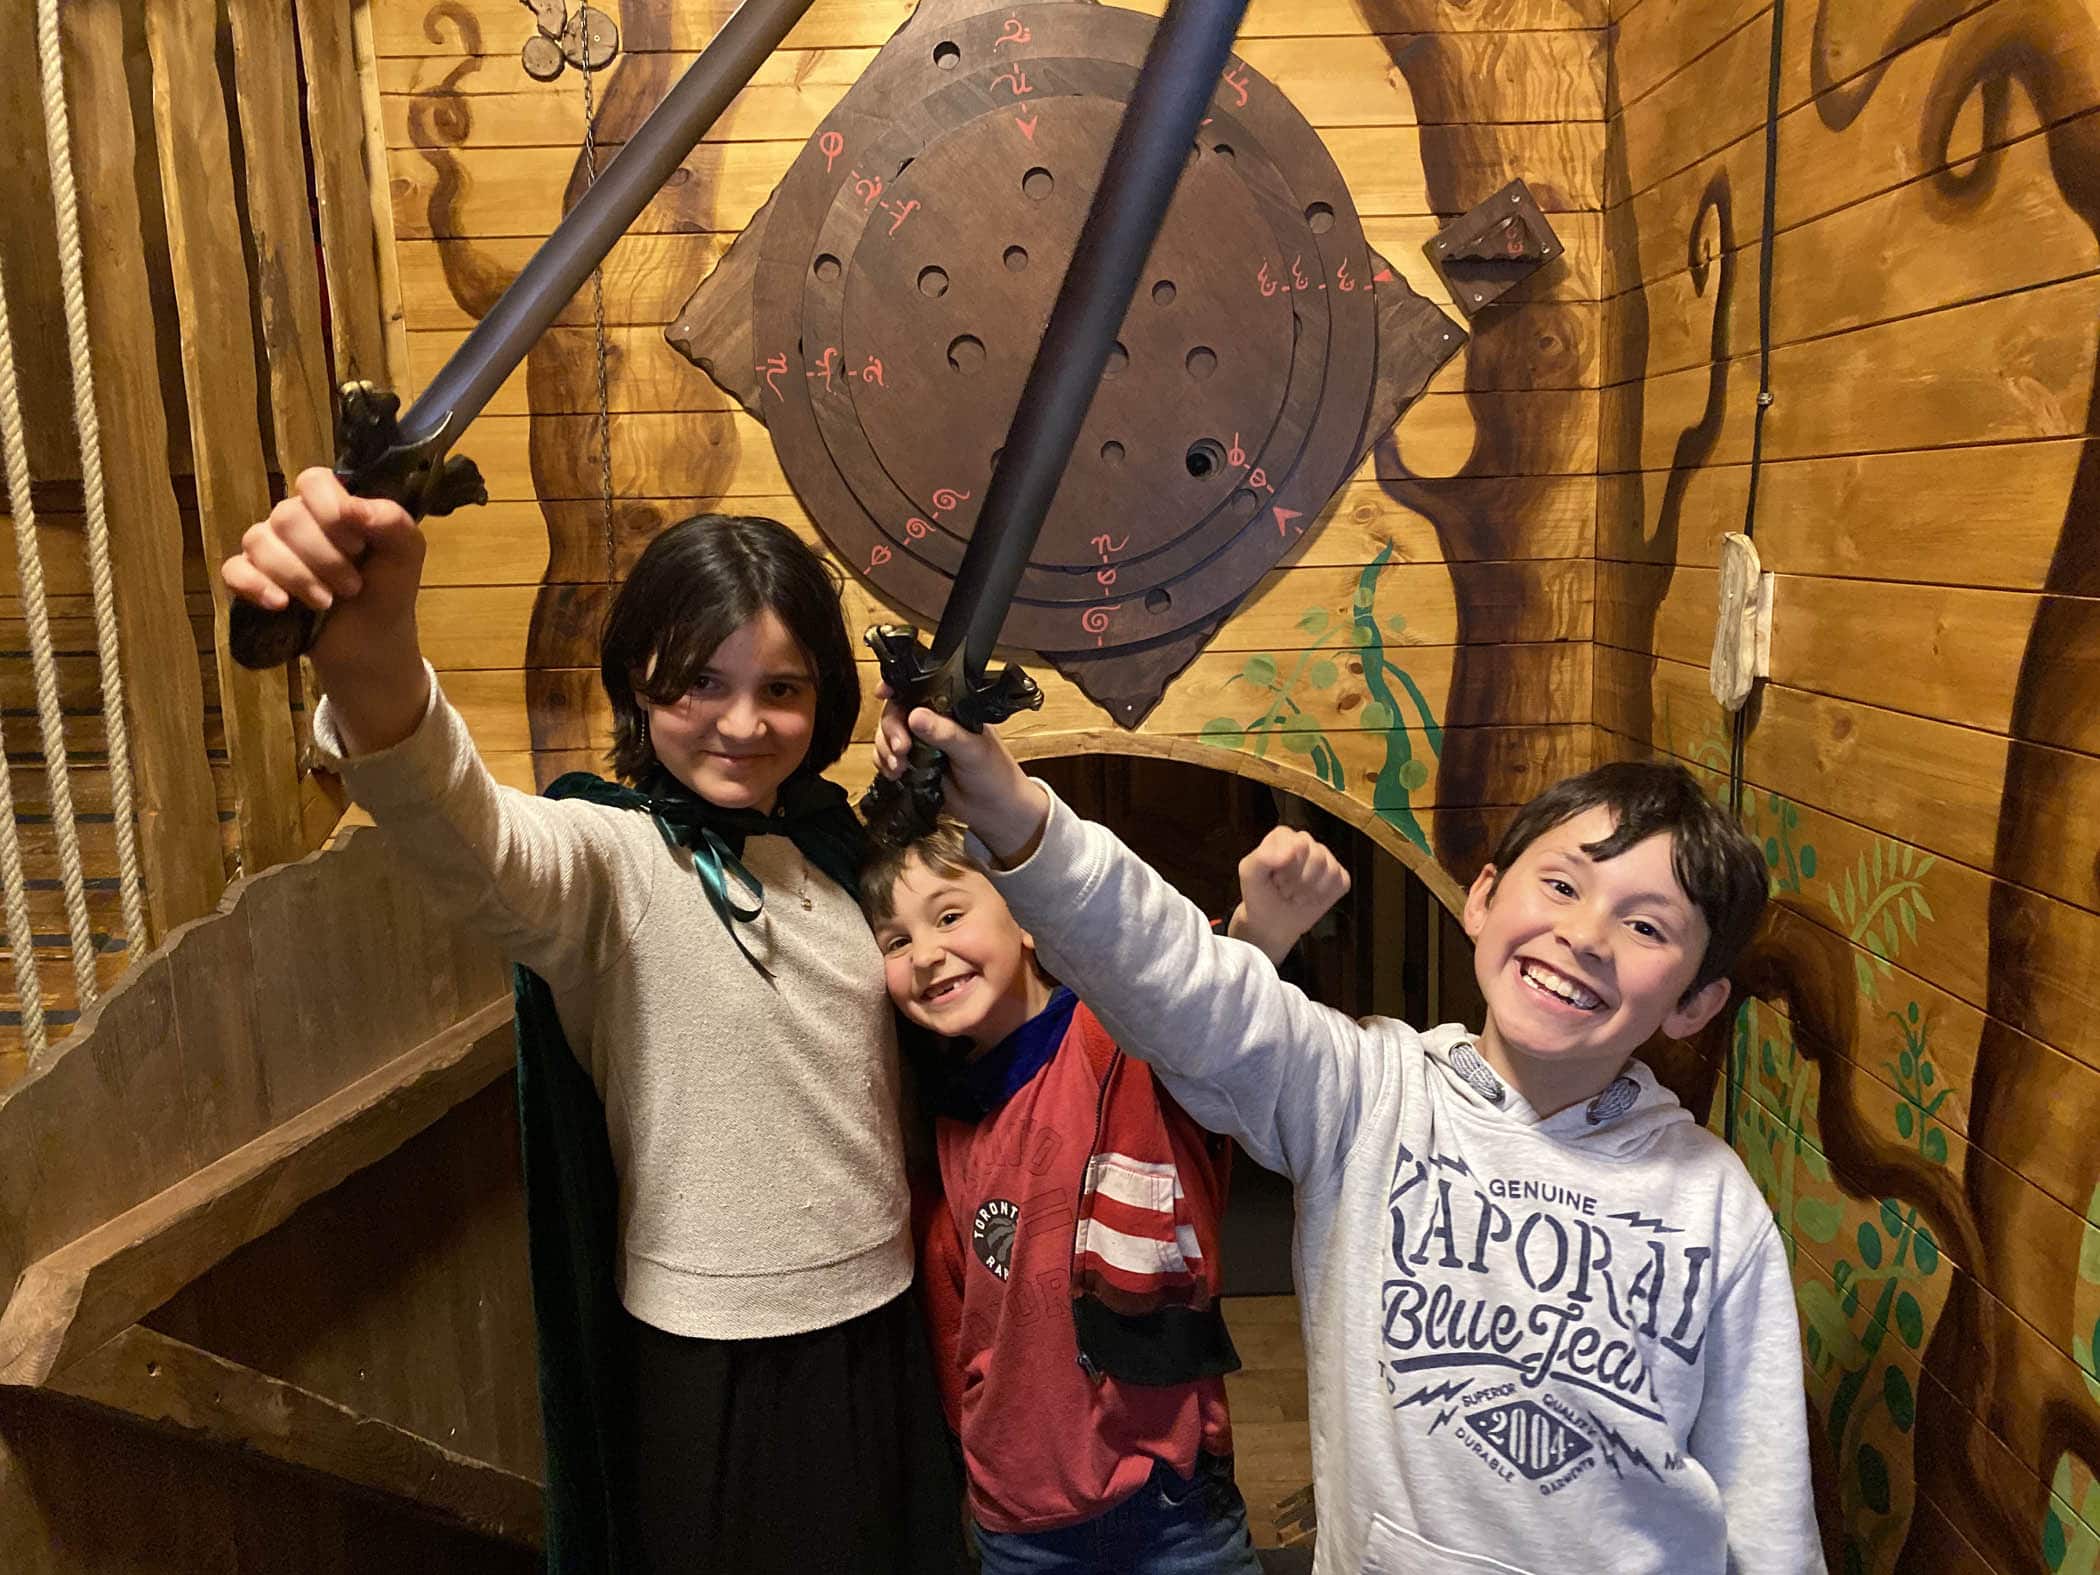 3 enfants de 7, 8 et 6 ans heureux d'avoir réussit "La Quête de L'Anneau" prennent la pose et fêtent leur victoire